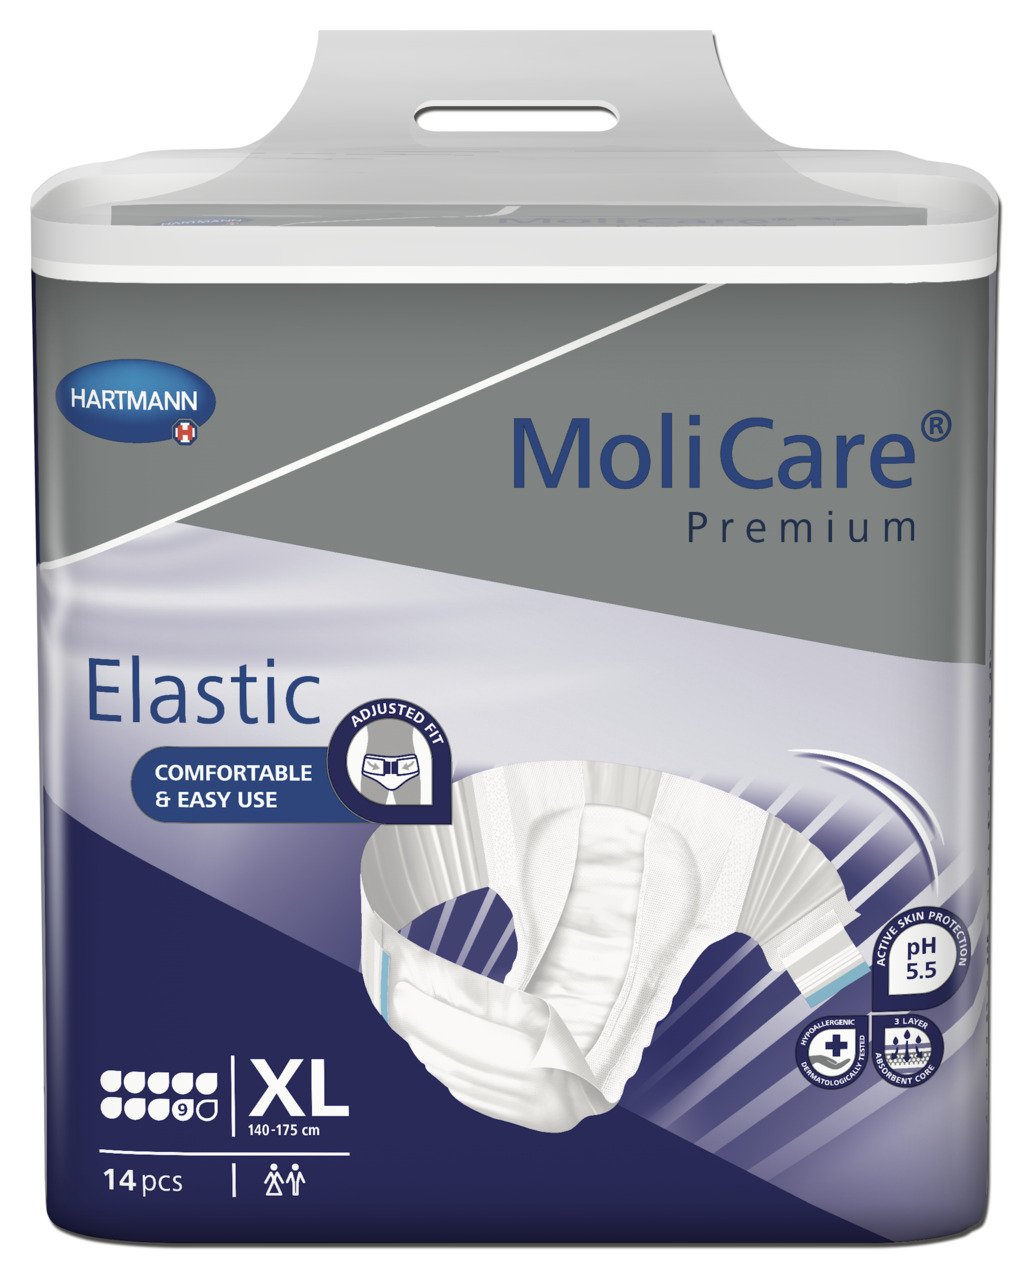 MoliCare Premium Elastic X-Large 9 drops 56